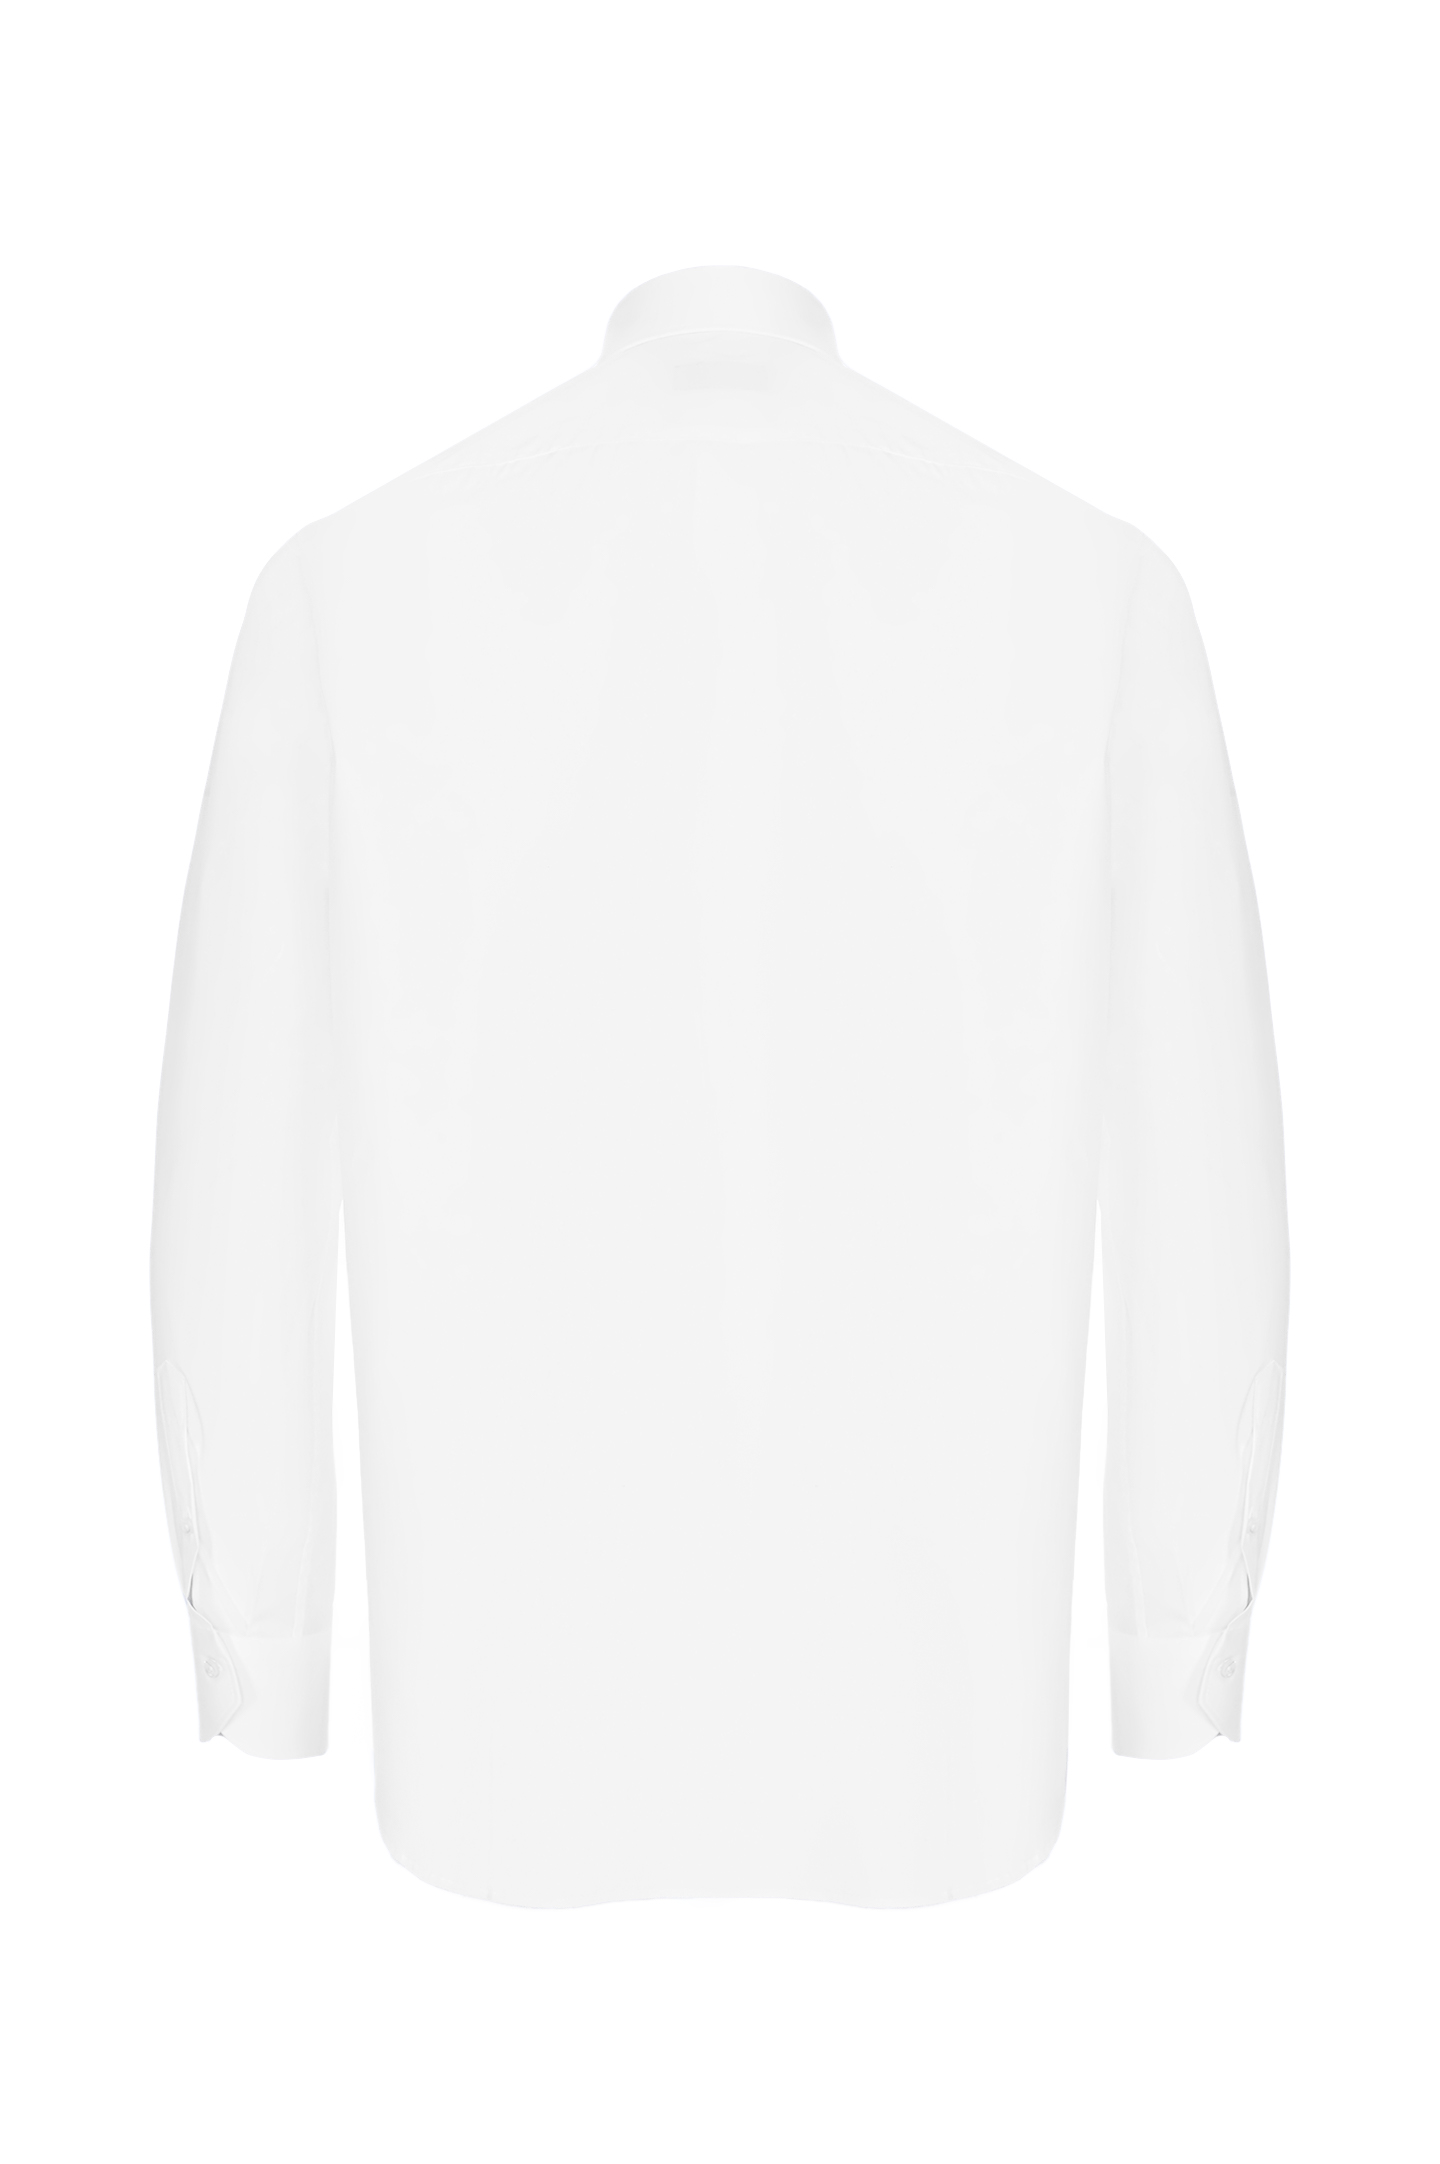 Рубашка из хлопка и эластана CANALI GD02832 7A1/1, цвет: Белый, Мужской